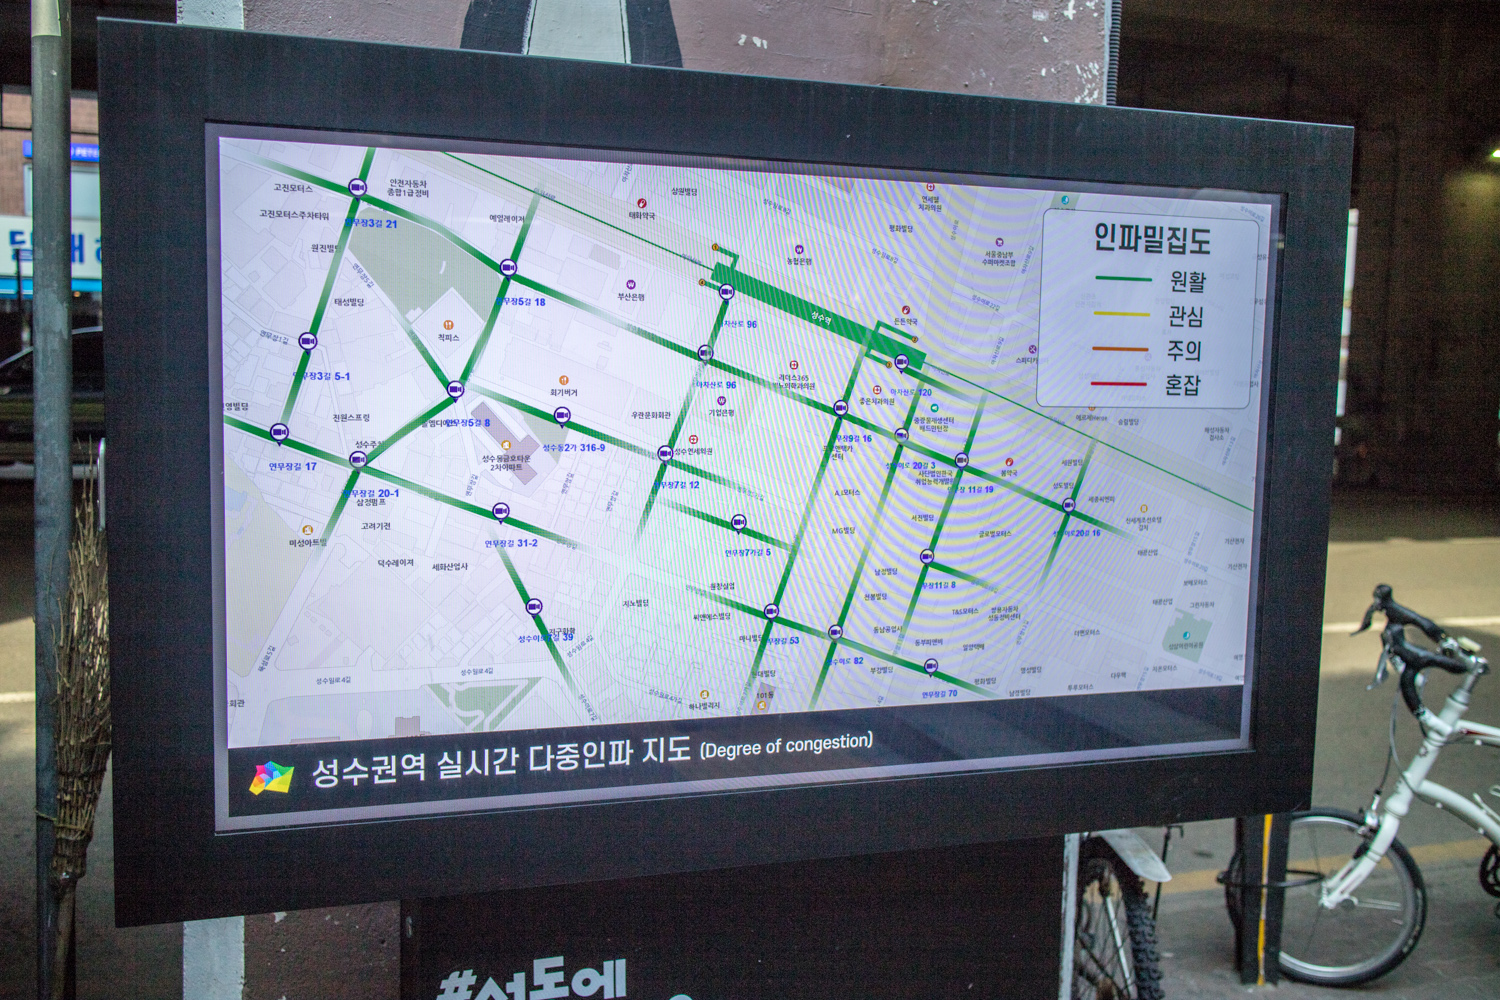 실시간 다중인파 지도를 통해 본 한국 공무원들